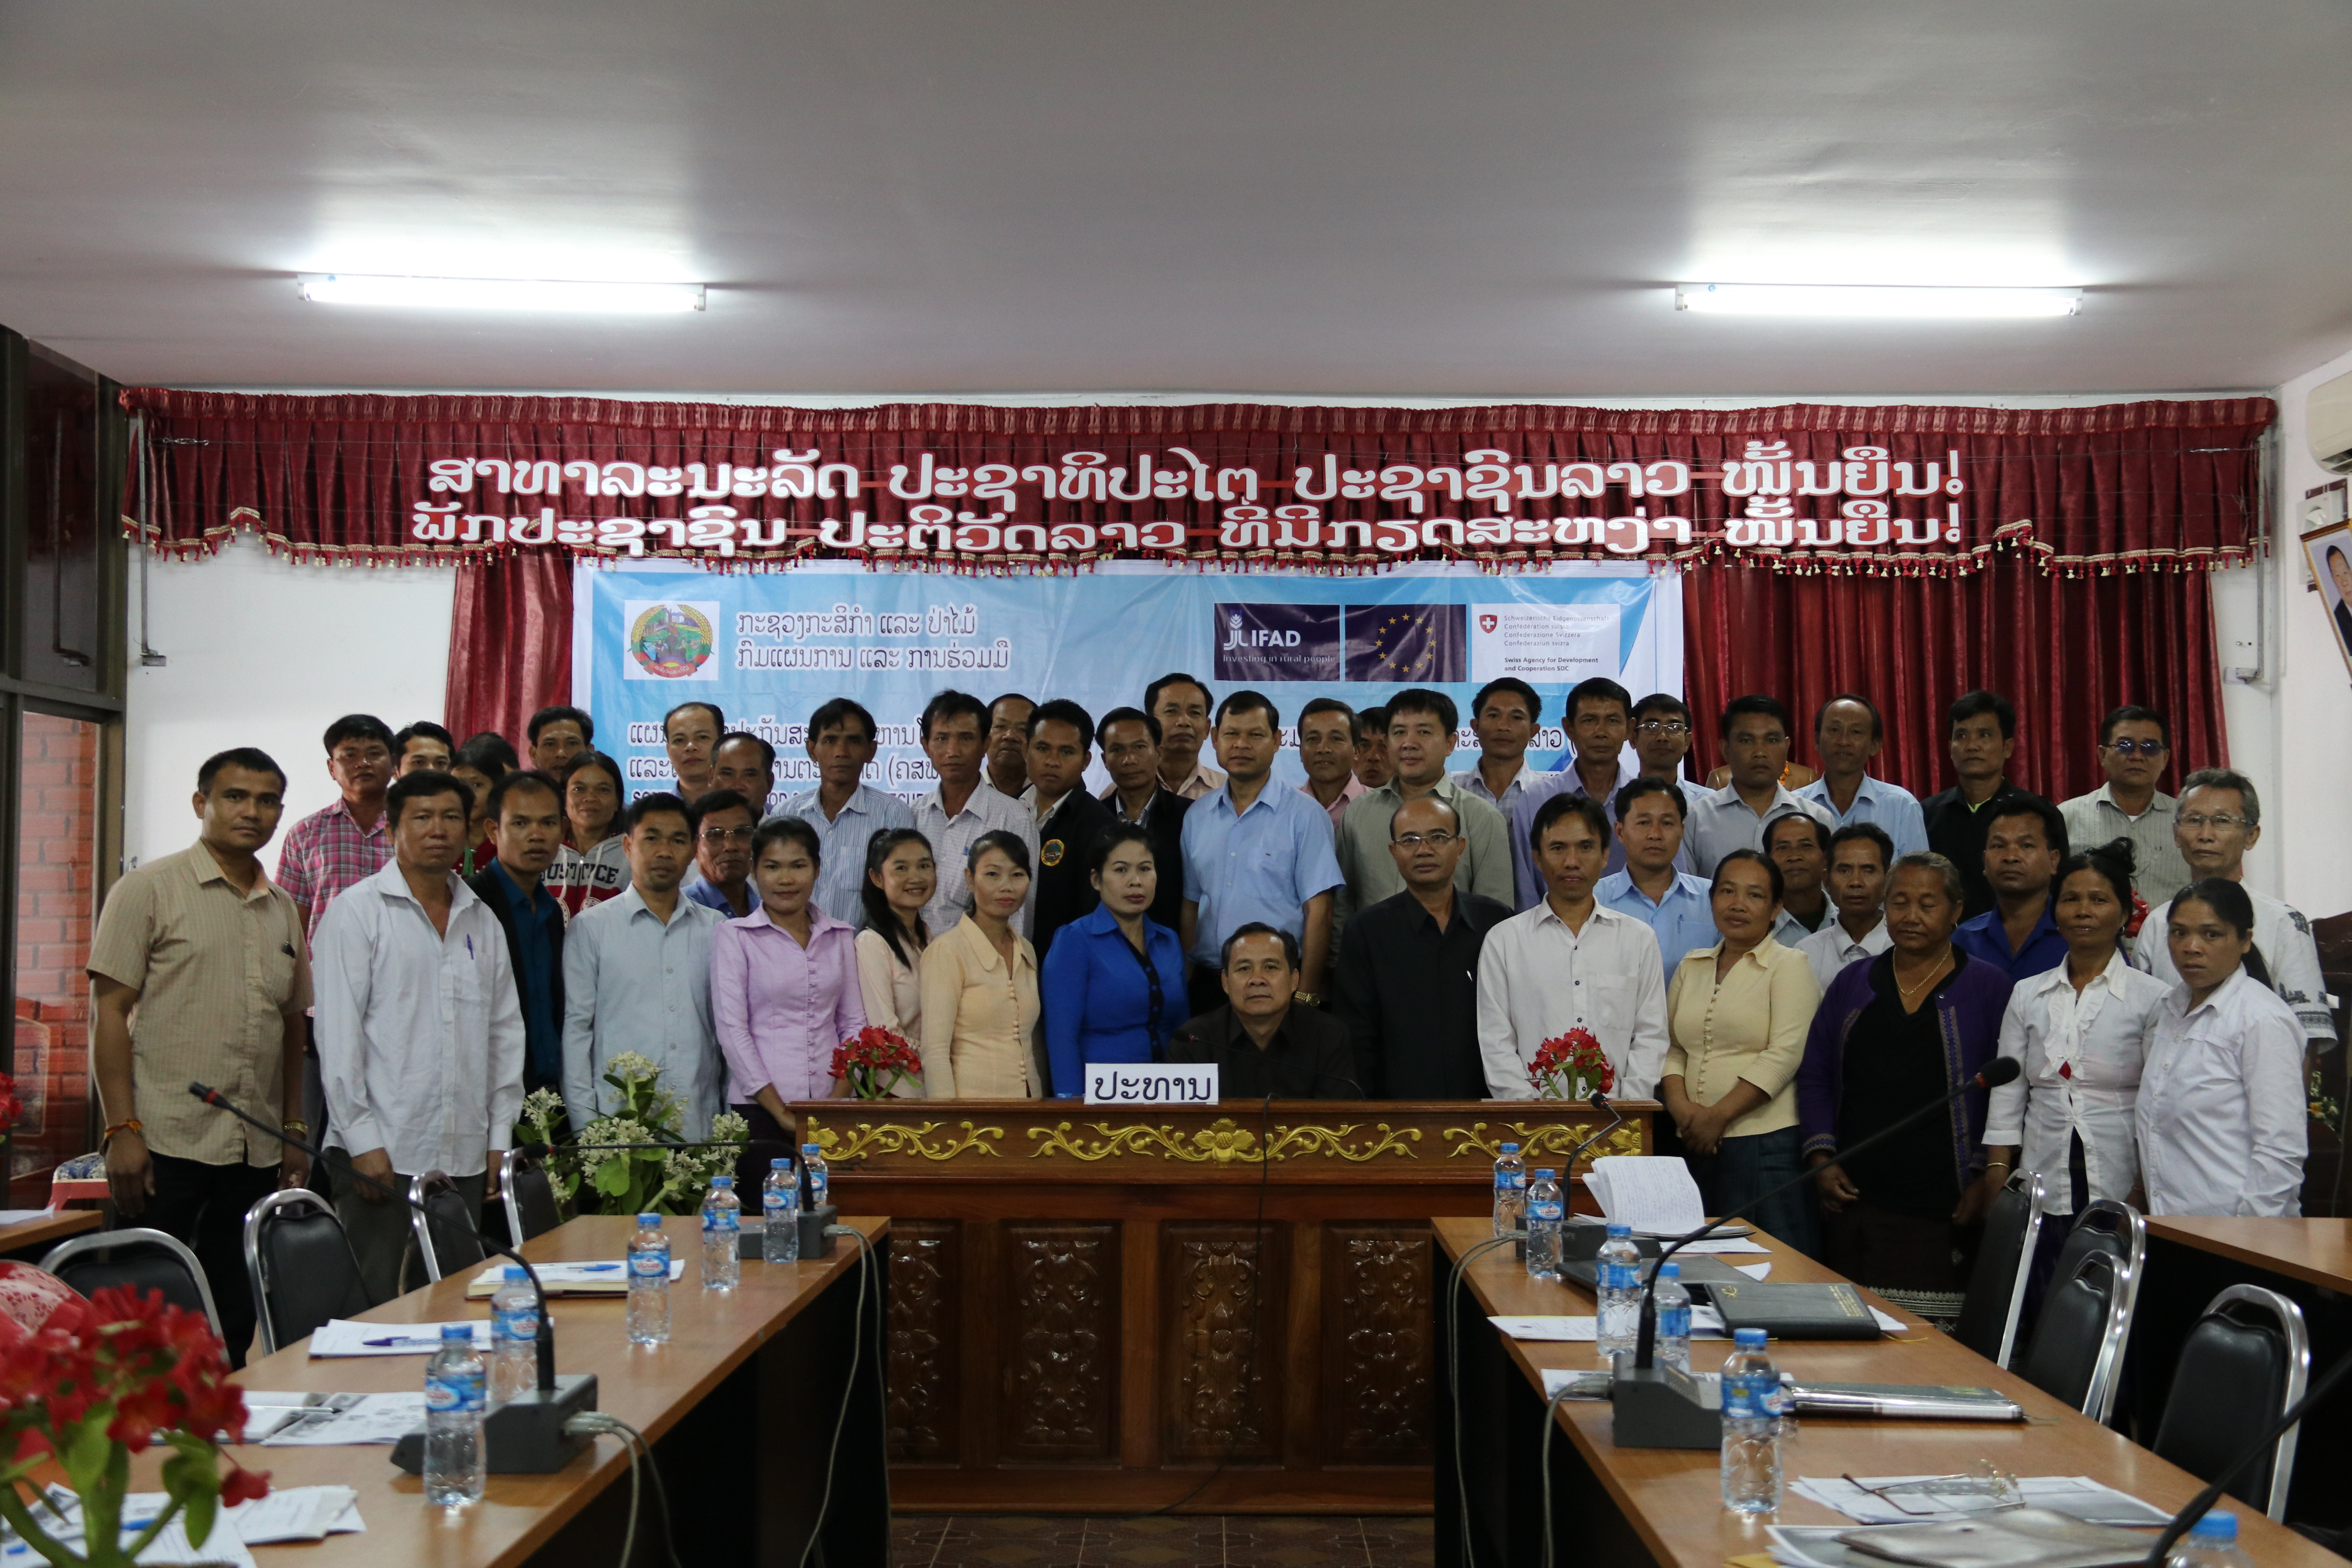 ກອງປະຊຸມປຶກສາຫາລືກ່ຽວກັບເຄືອຂ່າຍຊາວກະສິກອນແຂວງສາລາວັນ Provincial network of farmers in Saravane province discussed